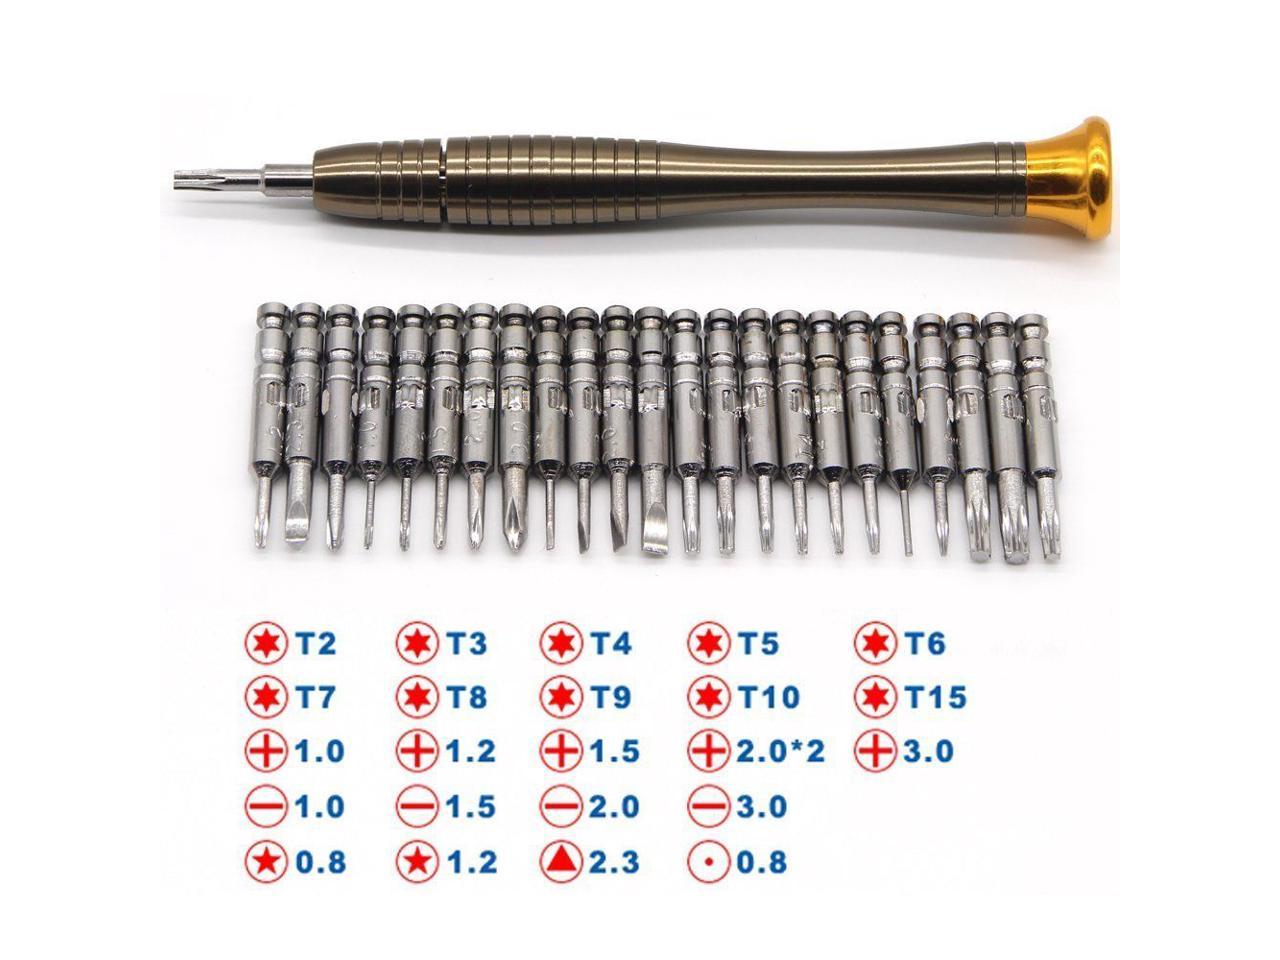 25 in 1 Precision Torx Screwdriver Repair Opening Tool Kit Set for iPhone Laptop